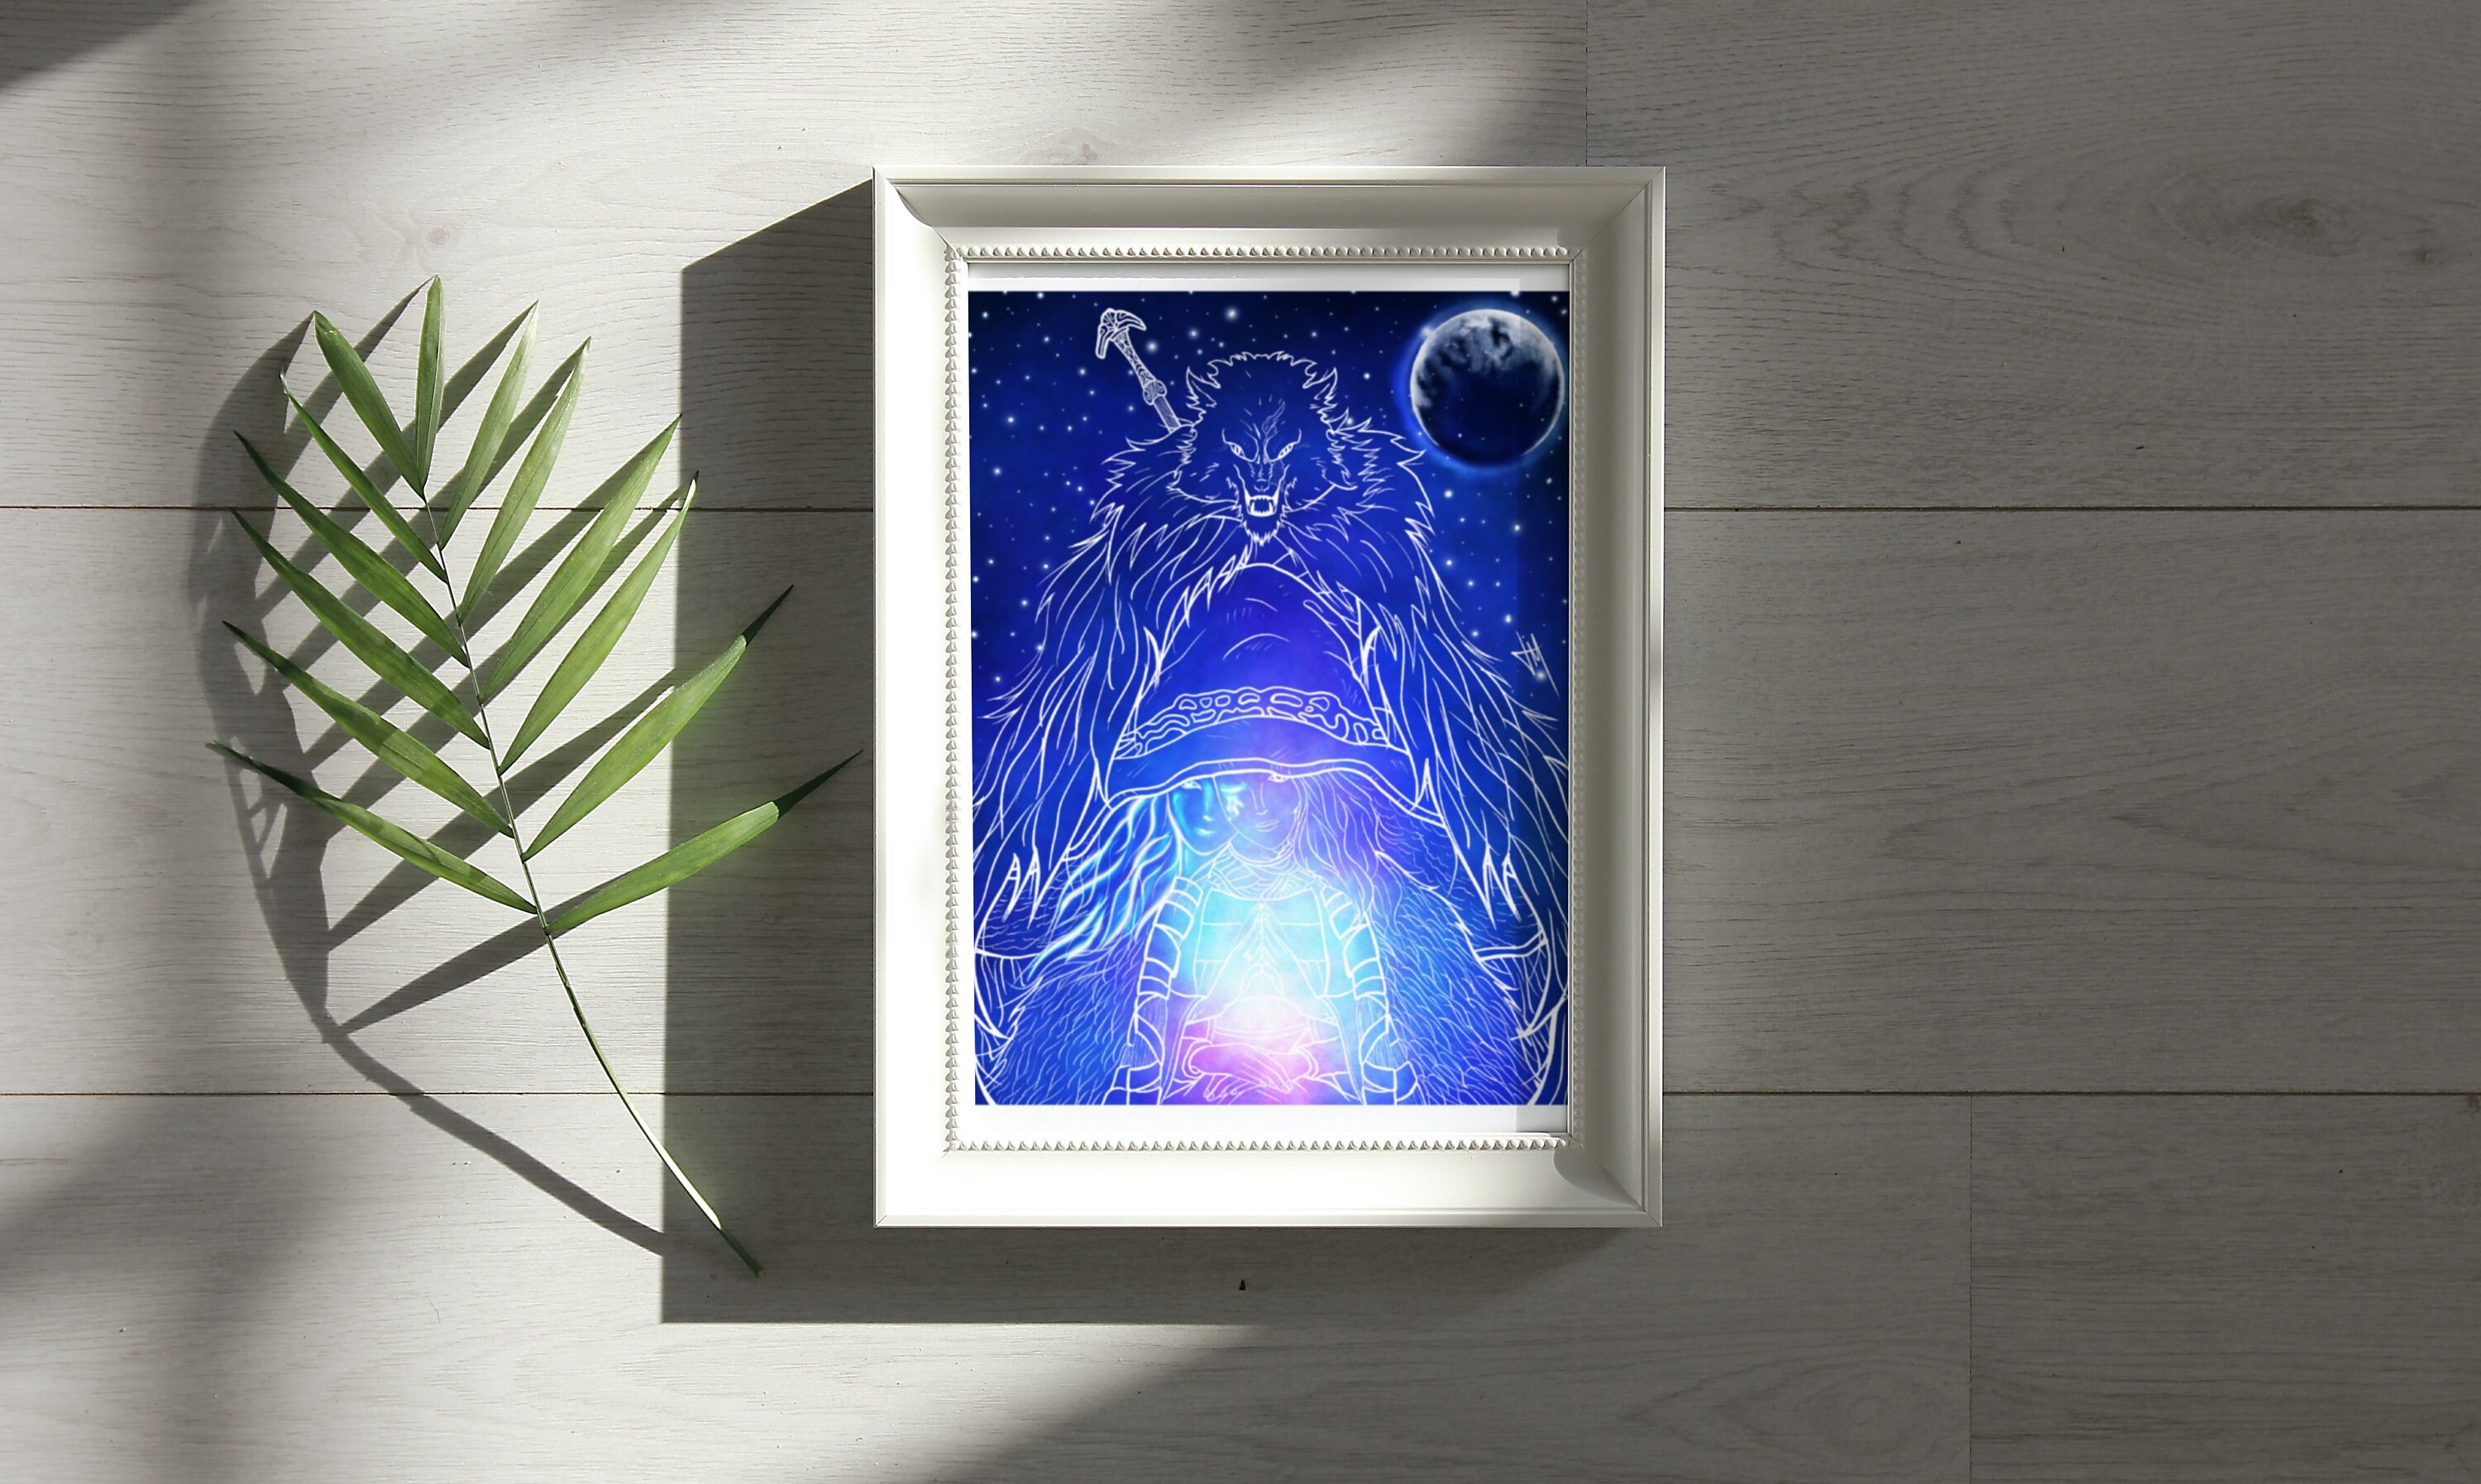 Ranni Fan Art Witch Poster Impressão em tela Arte de parede para casa 1  painel Decorações sem moldura 91,44 cm x 50,8 cm